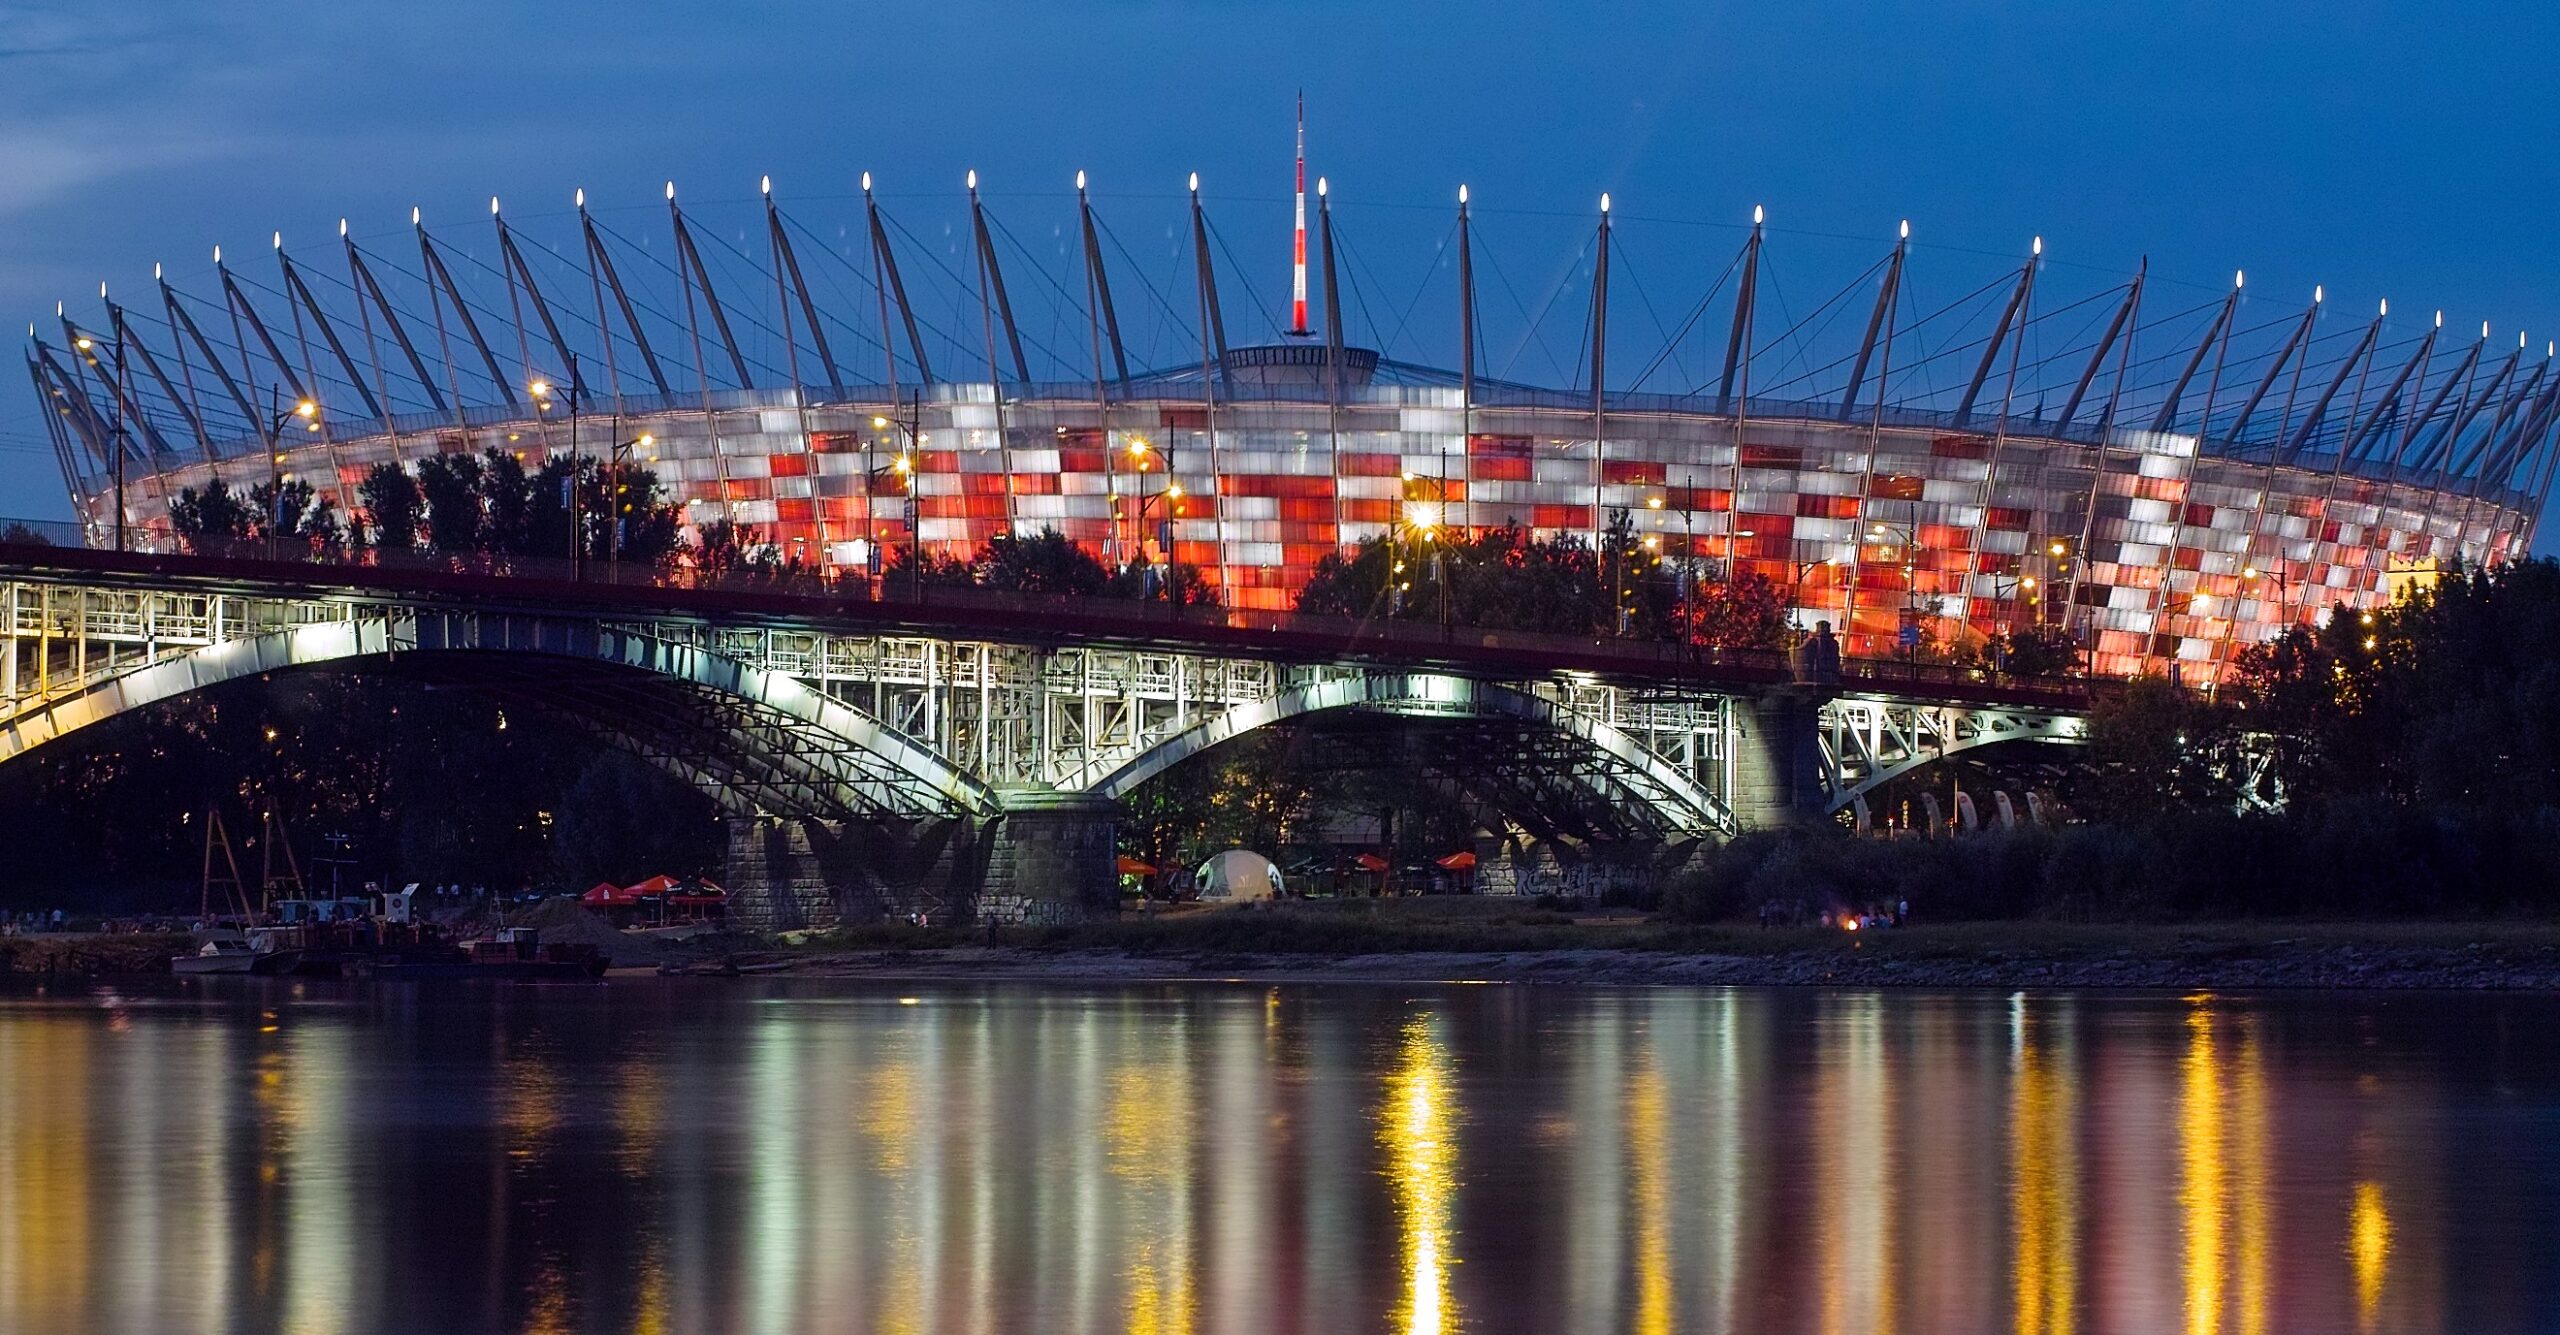 Polski stadion narodowy został zamknięty z powodu wady dachu, co wymusiło przełożenie meczu z Chile